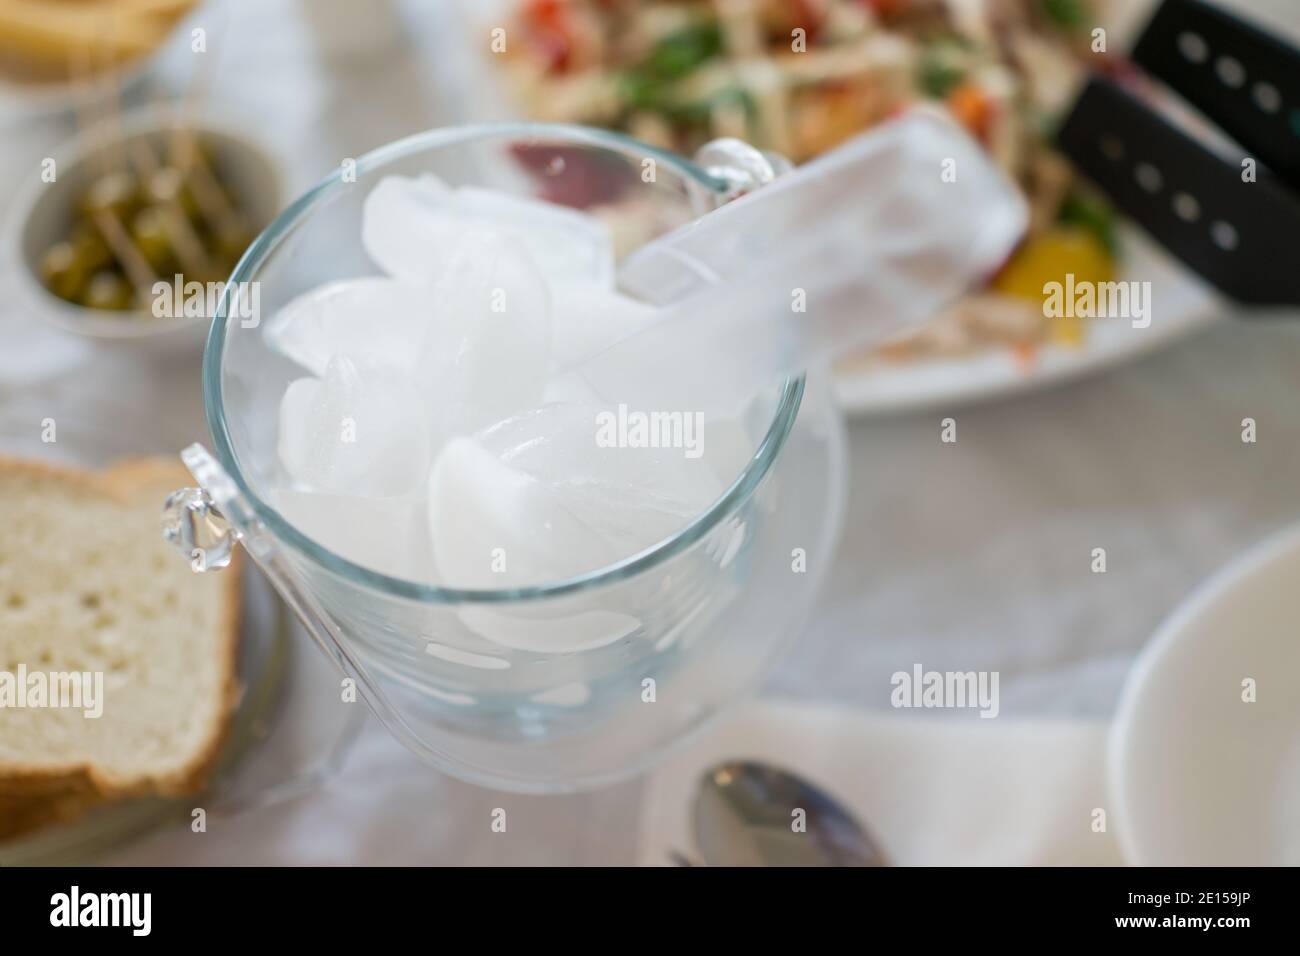 Ice bucket on kitchen table Stock Photo